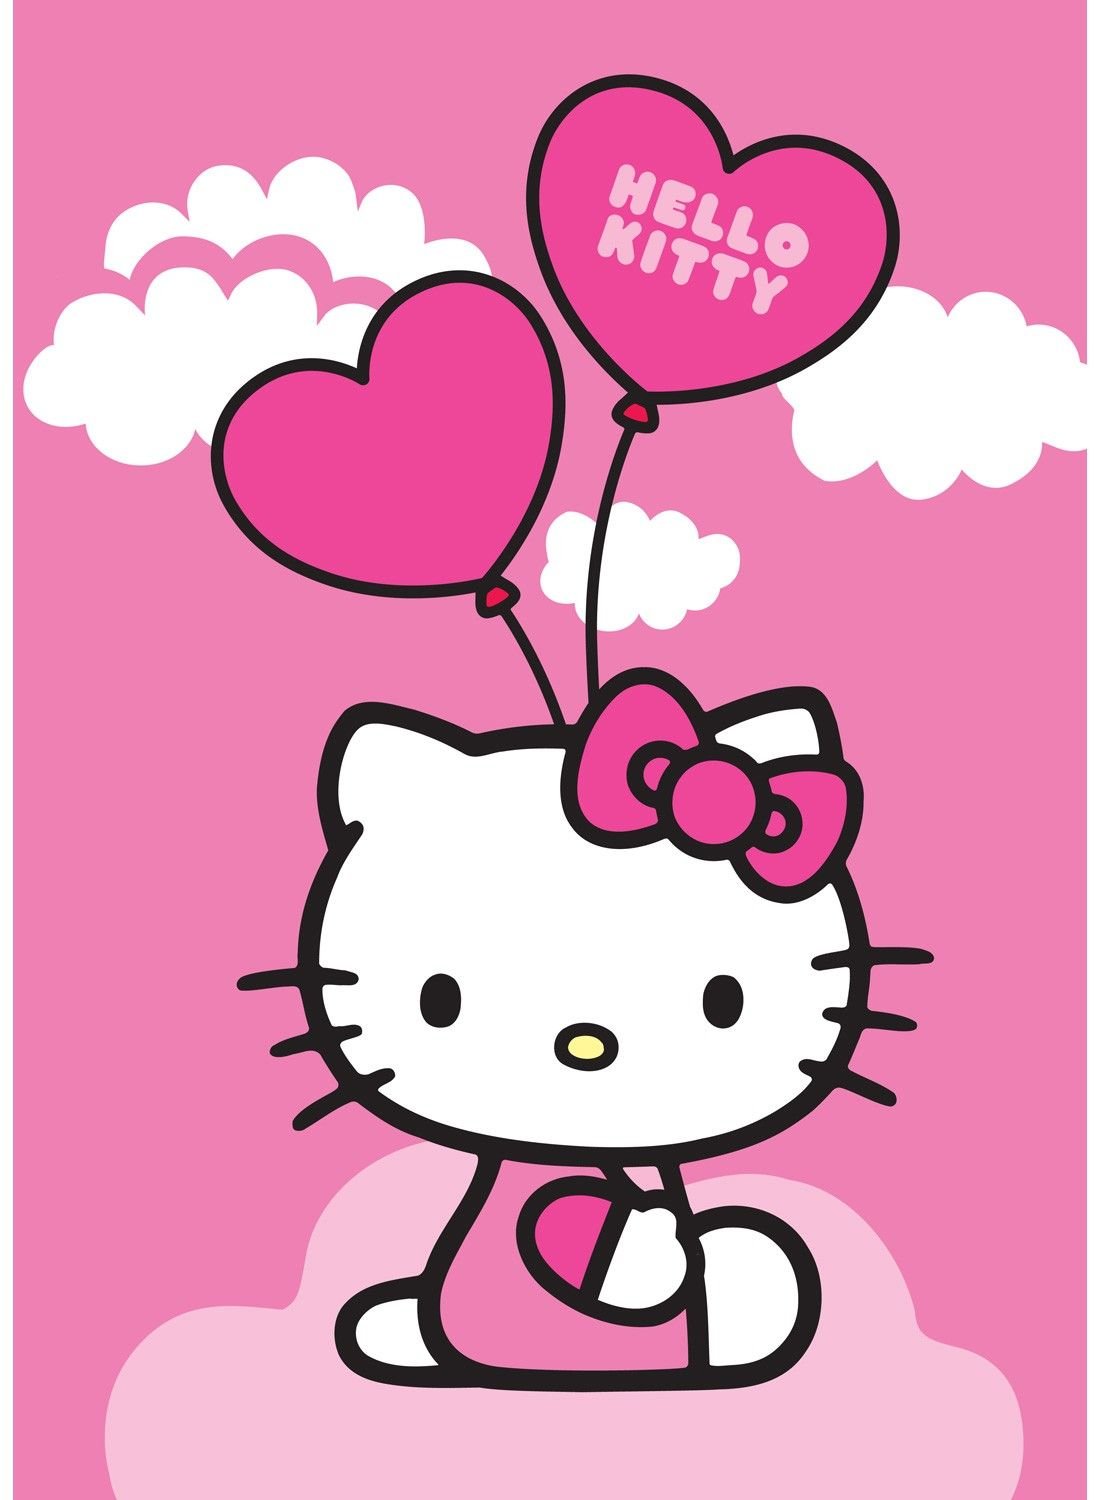 Как переводится хеллоу китти. Китти. Hello Kitty. Милые открыточки с Хеллоу Китти. Открытка в стиле Хеллоу Китти.